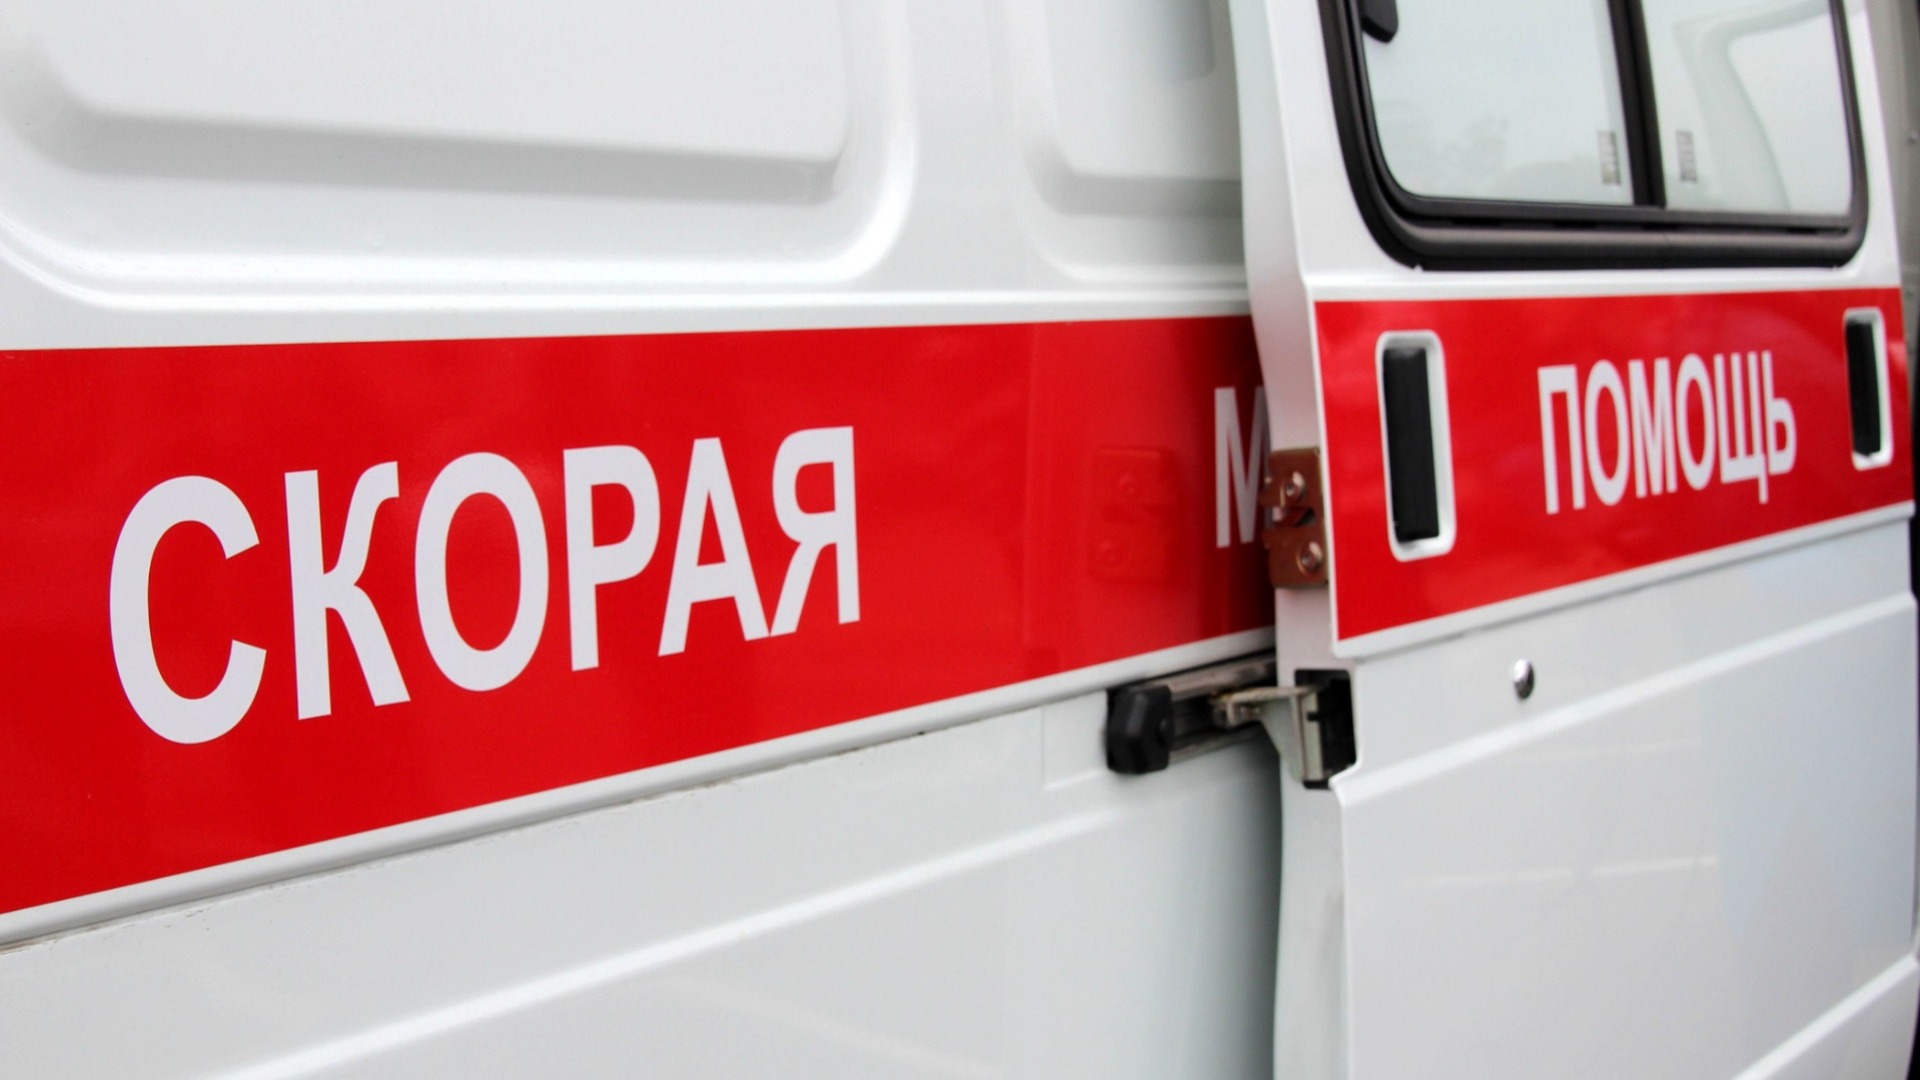 Шестилетний малыш выпал из окна в Волгограде